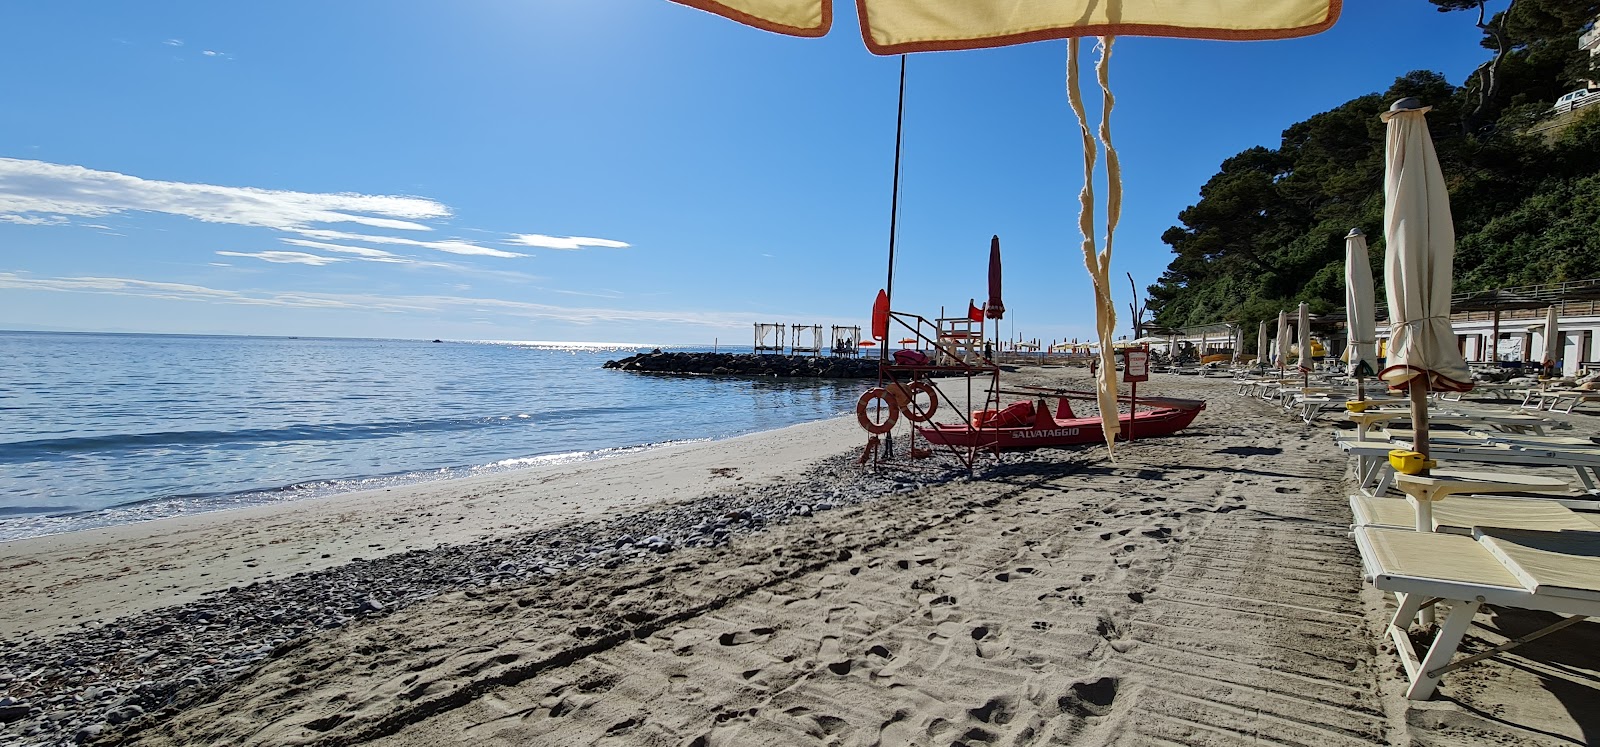 Fotografie cu Bagni Capo Mele - locul popular printre cunoscătorii de relaxare